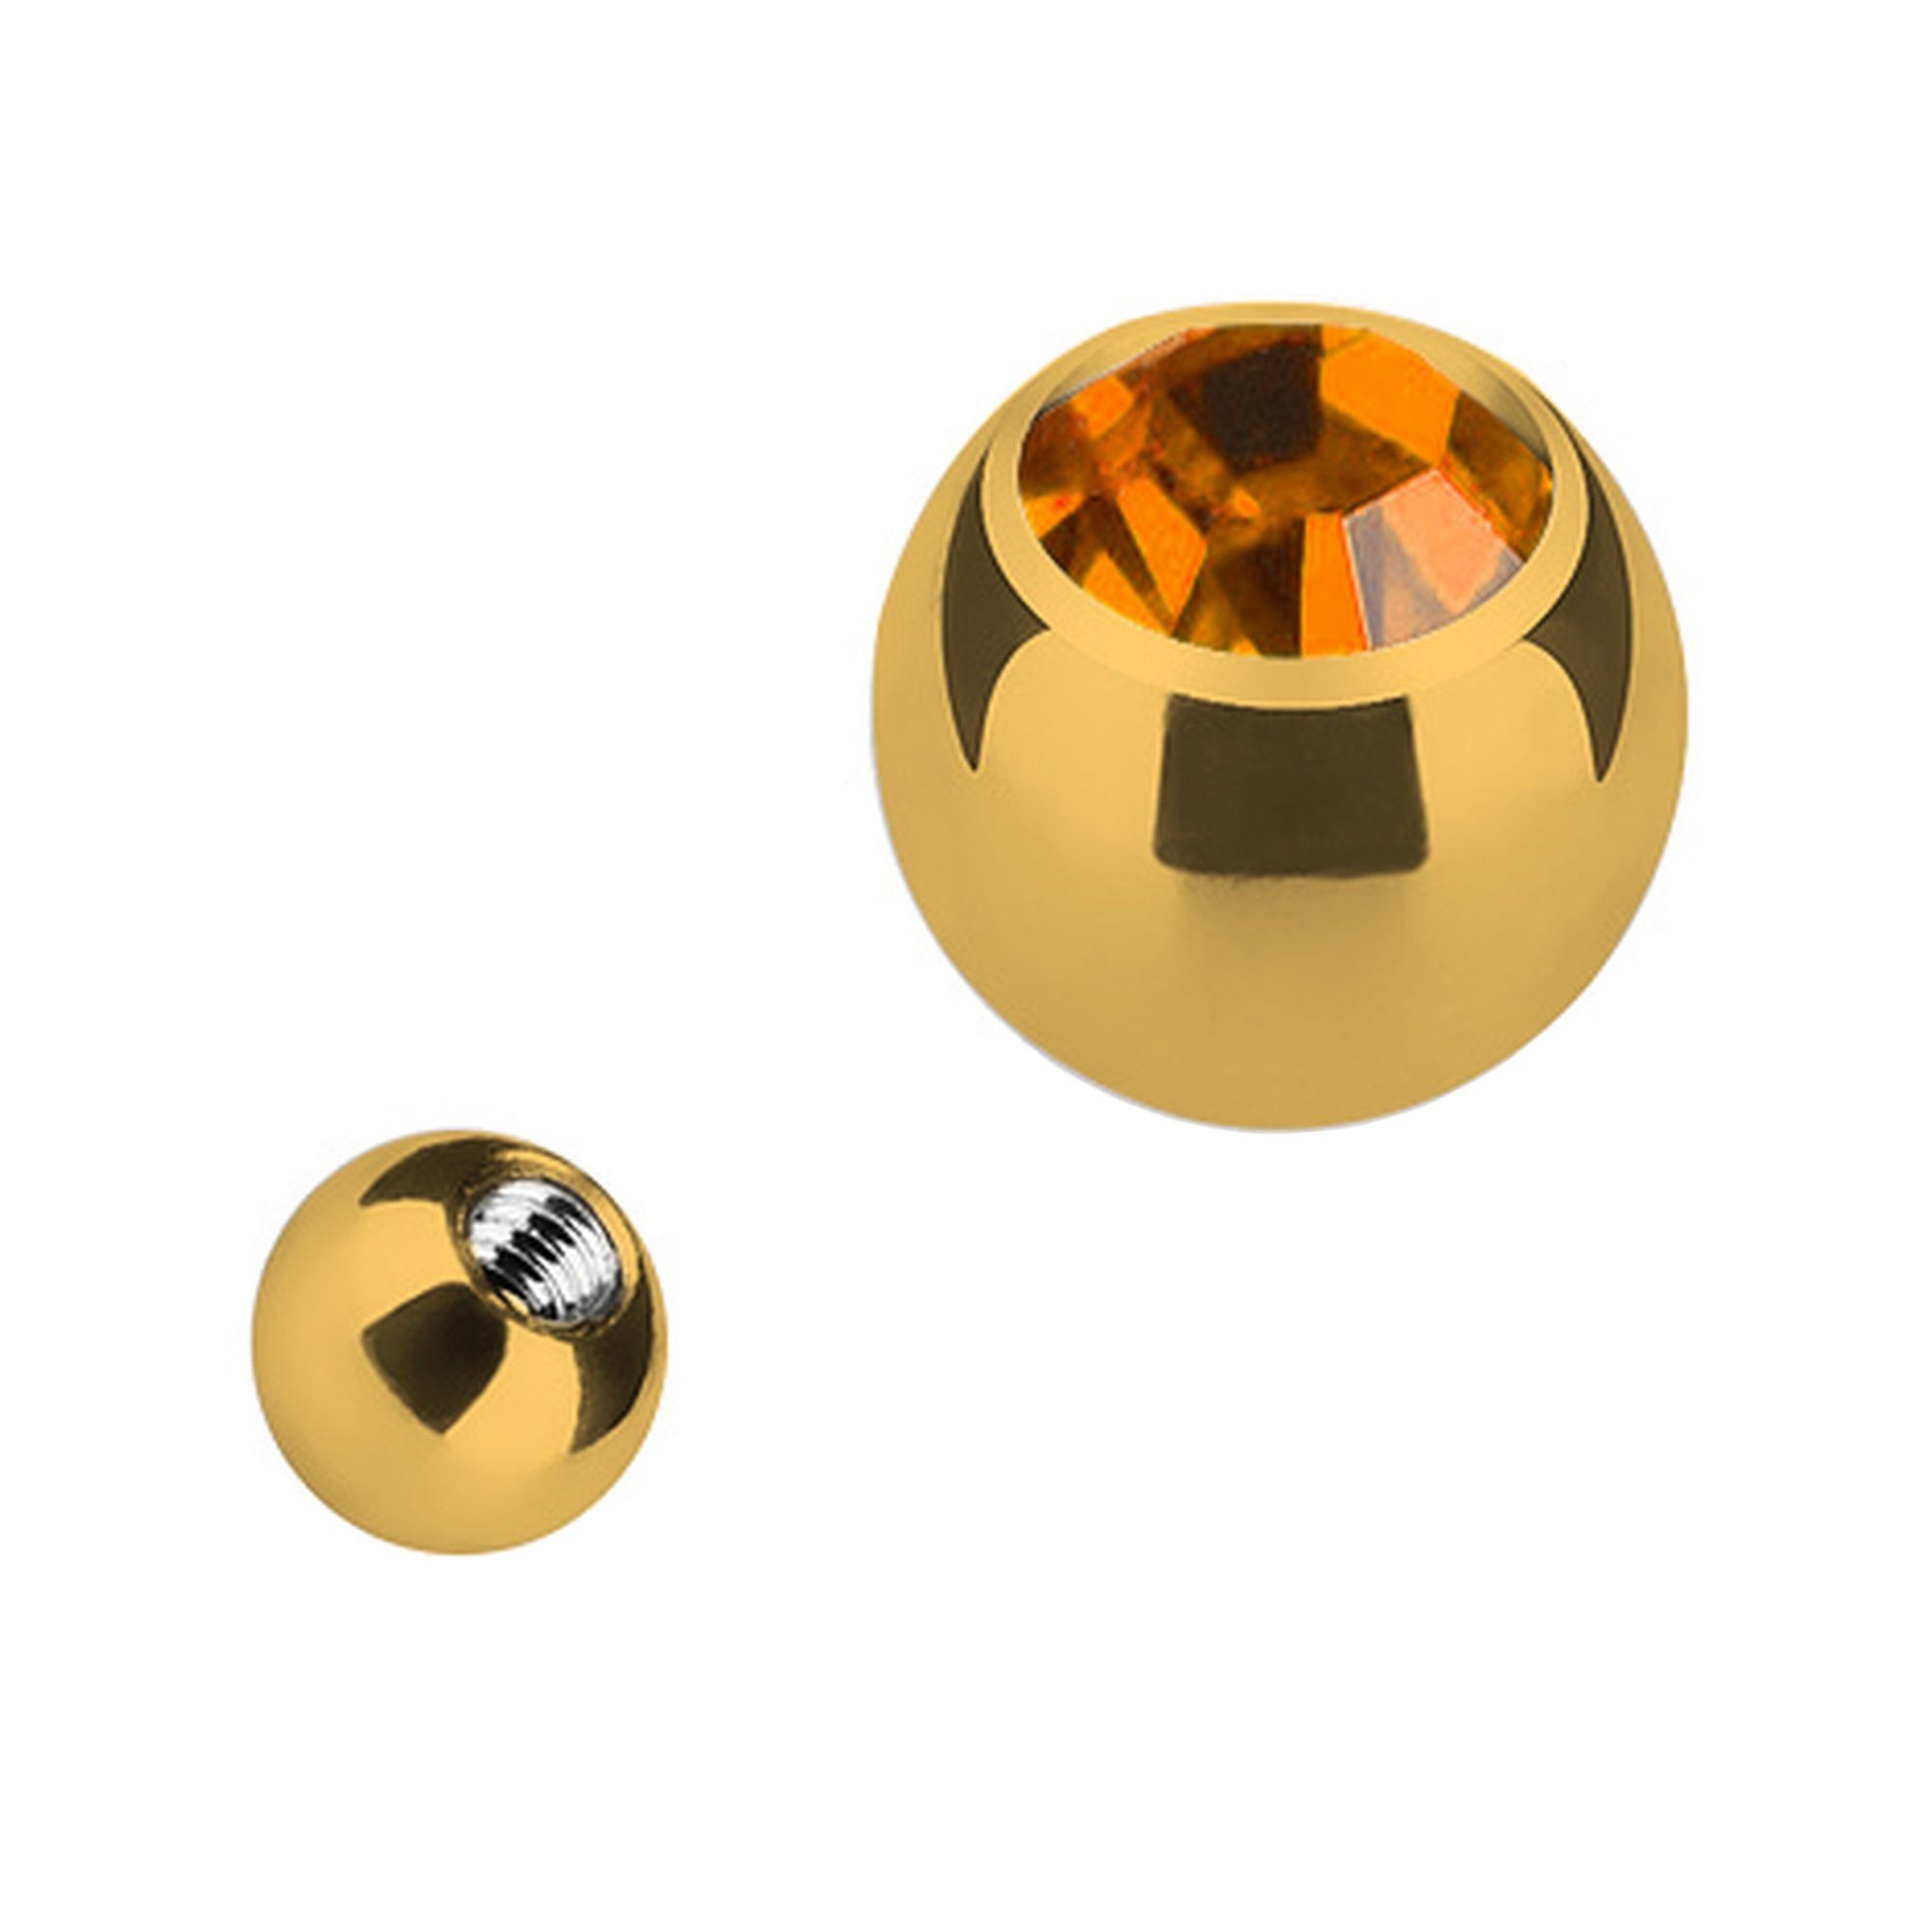 Taffstyle Piercing-Set Piercing Ersatz Schraubkugel Topaz Gold Gold Kugel Edelstahl Strass Verschluss Ersatzteile Kristall, mit mit Verschlusskugel